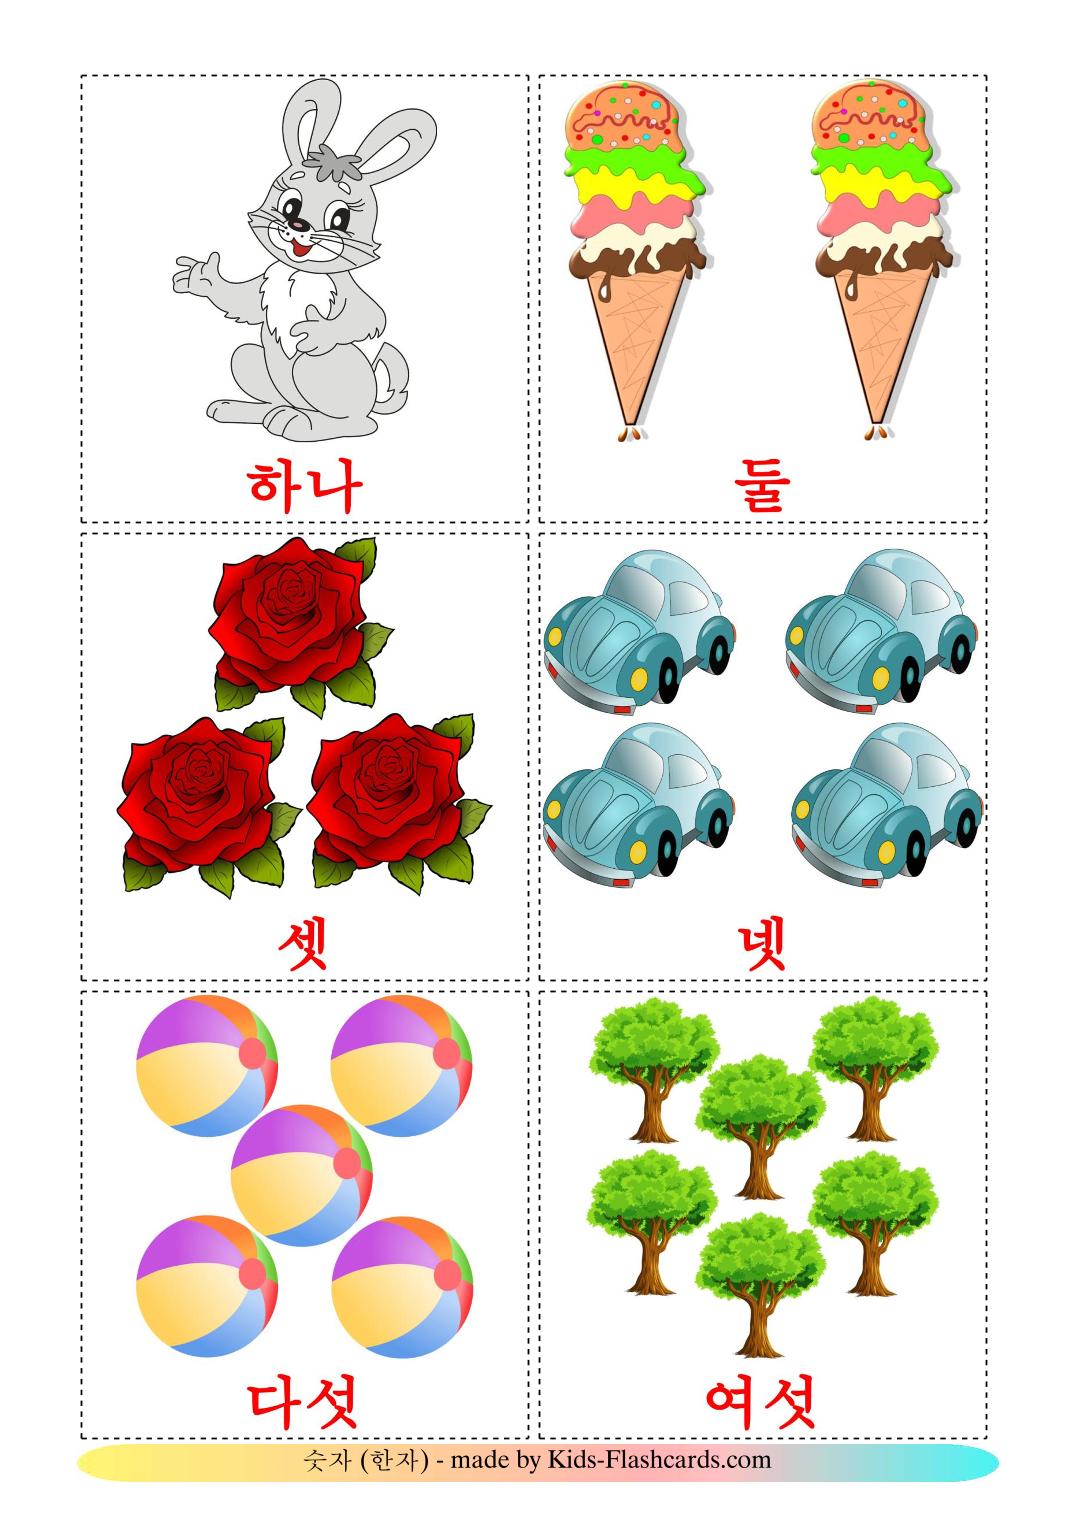 Het tellen - 10 gratis printbare koreaansee kaarten